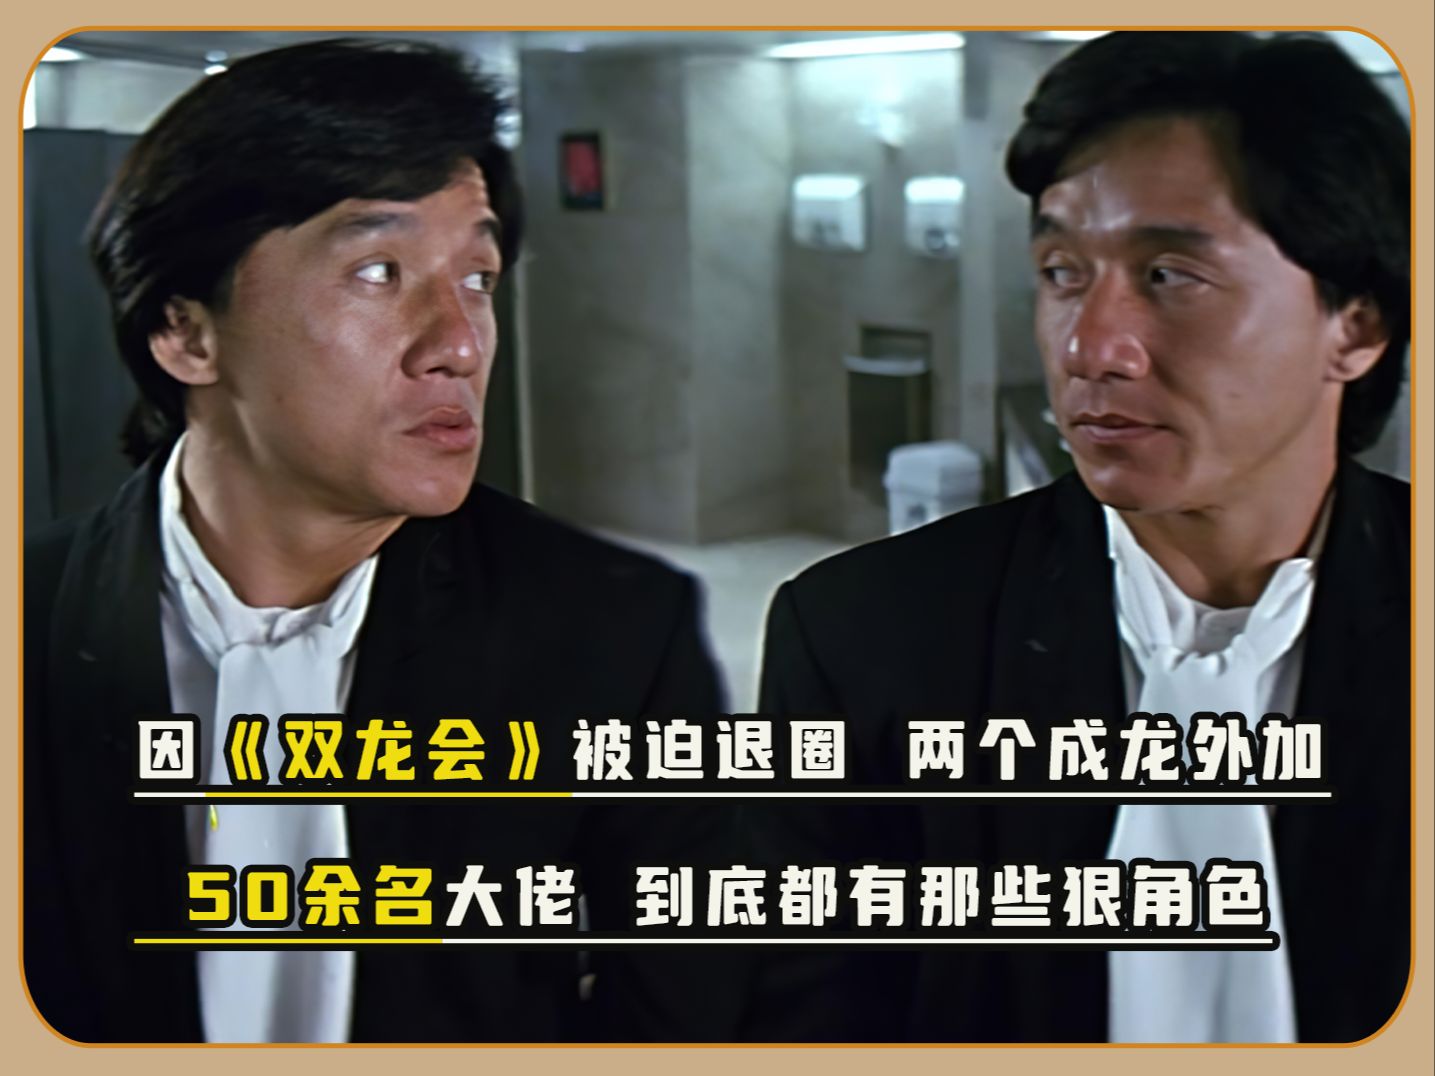 因一部双龙会导致退圈，香港大佬联合参演这部电影到底有多少故事